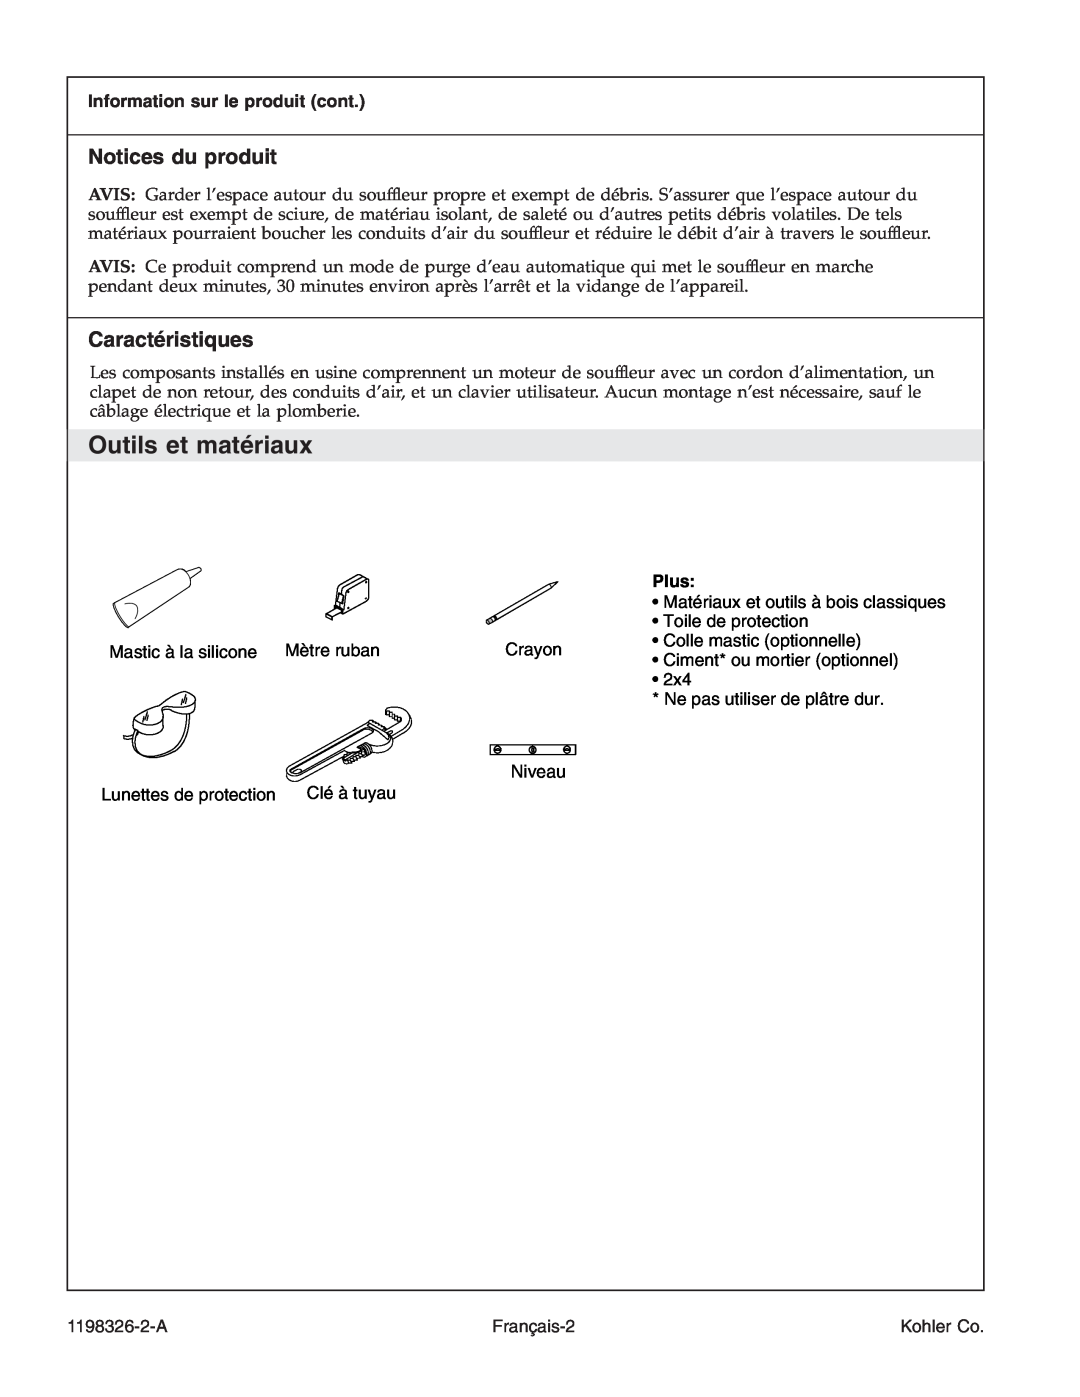 Kohler 1198326-2-A Outils et matériaux, Notices du produit, Caractéristiques, Niveau, Information sur le produit cont 